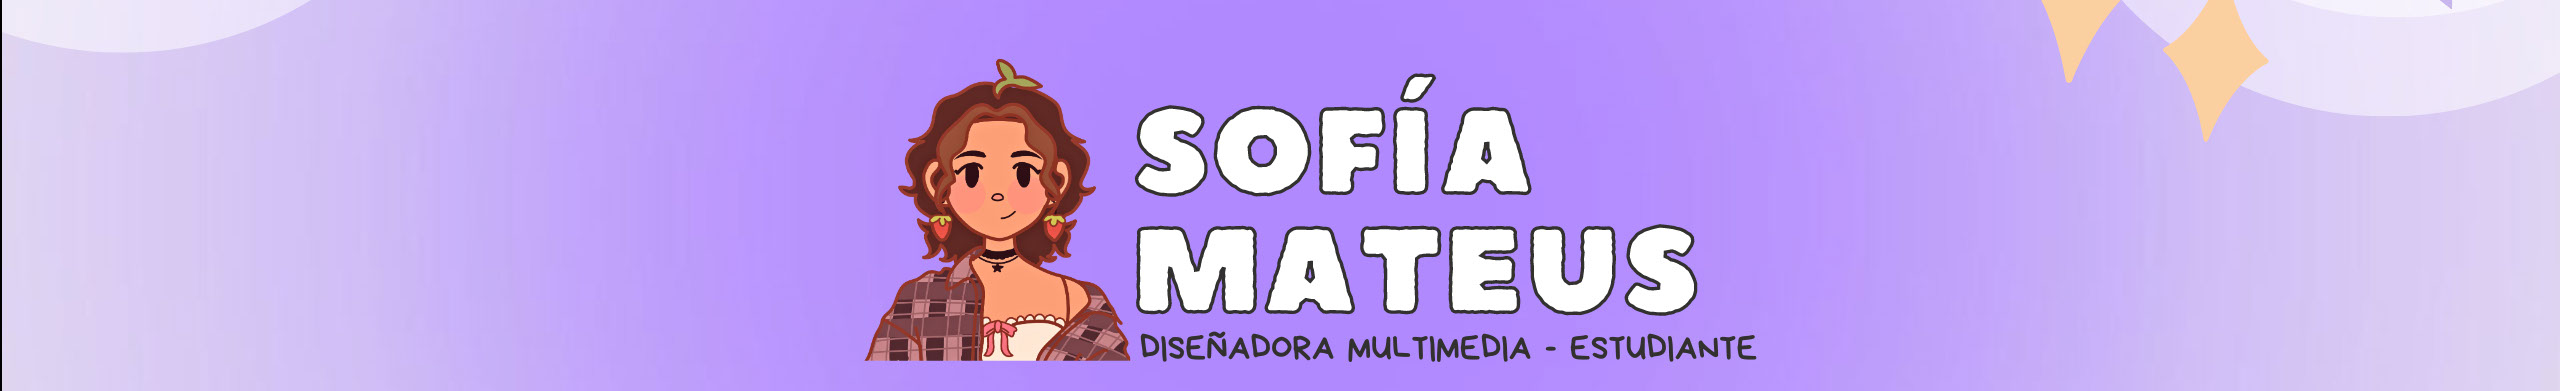 Sofía Mateuss profilbanner